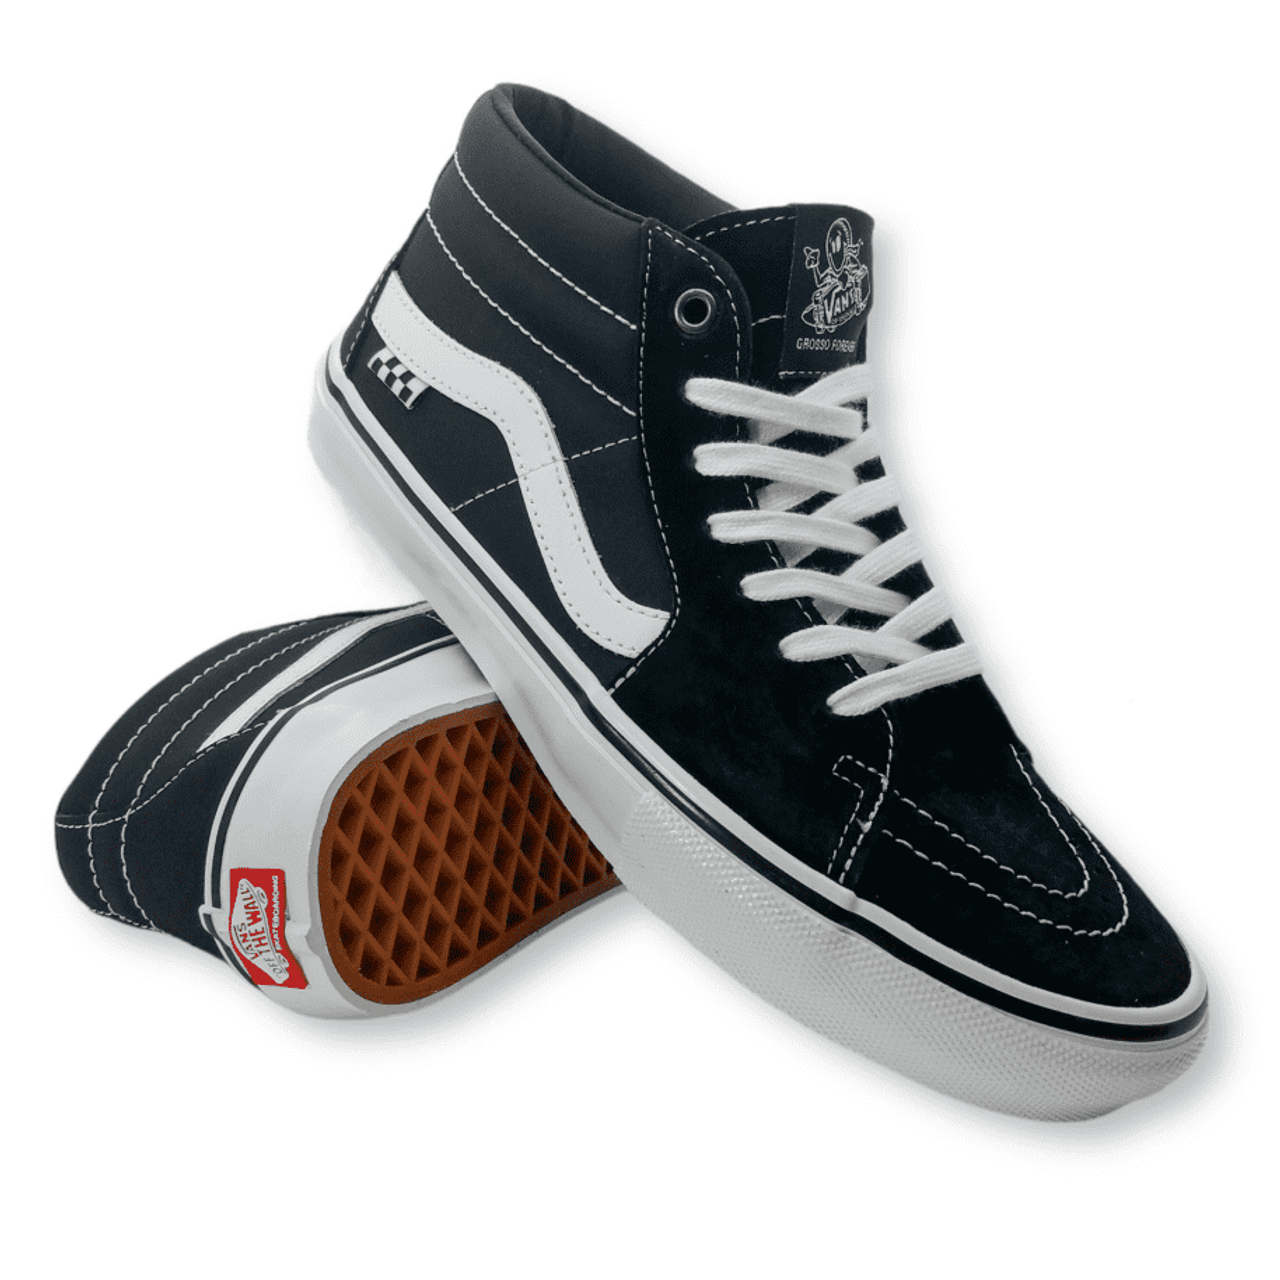 Socialisme Afslachten Prestatie Vans Skate Grosso Mid Shoes (Black/White/Emo Leather)